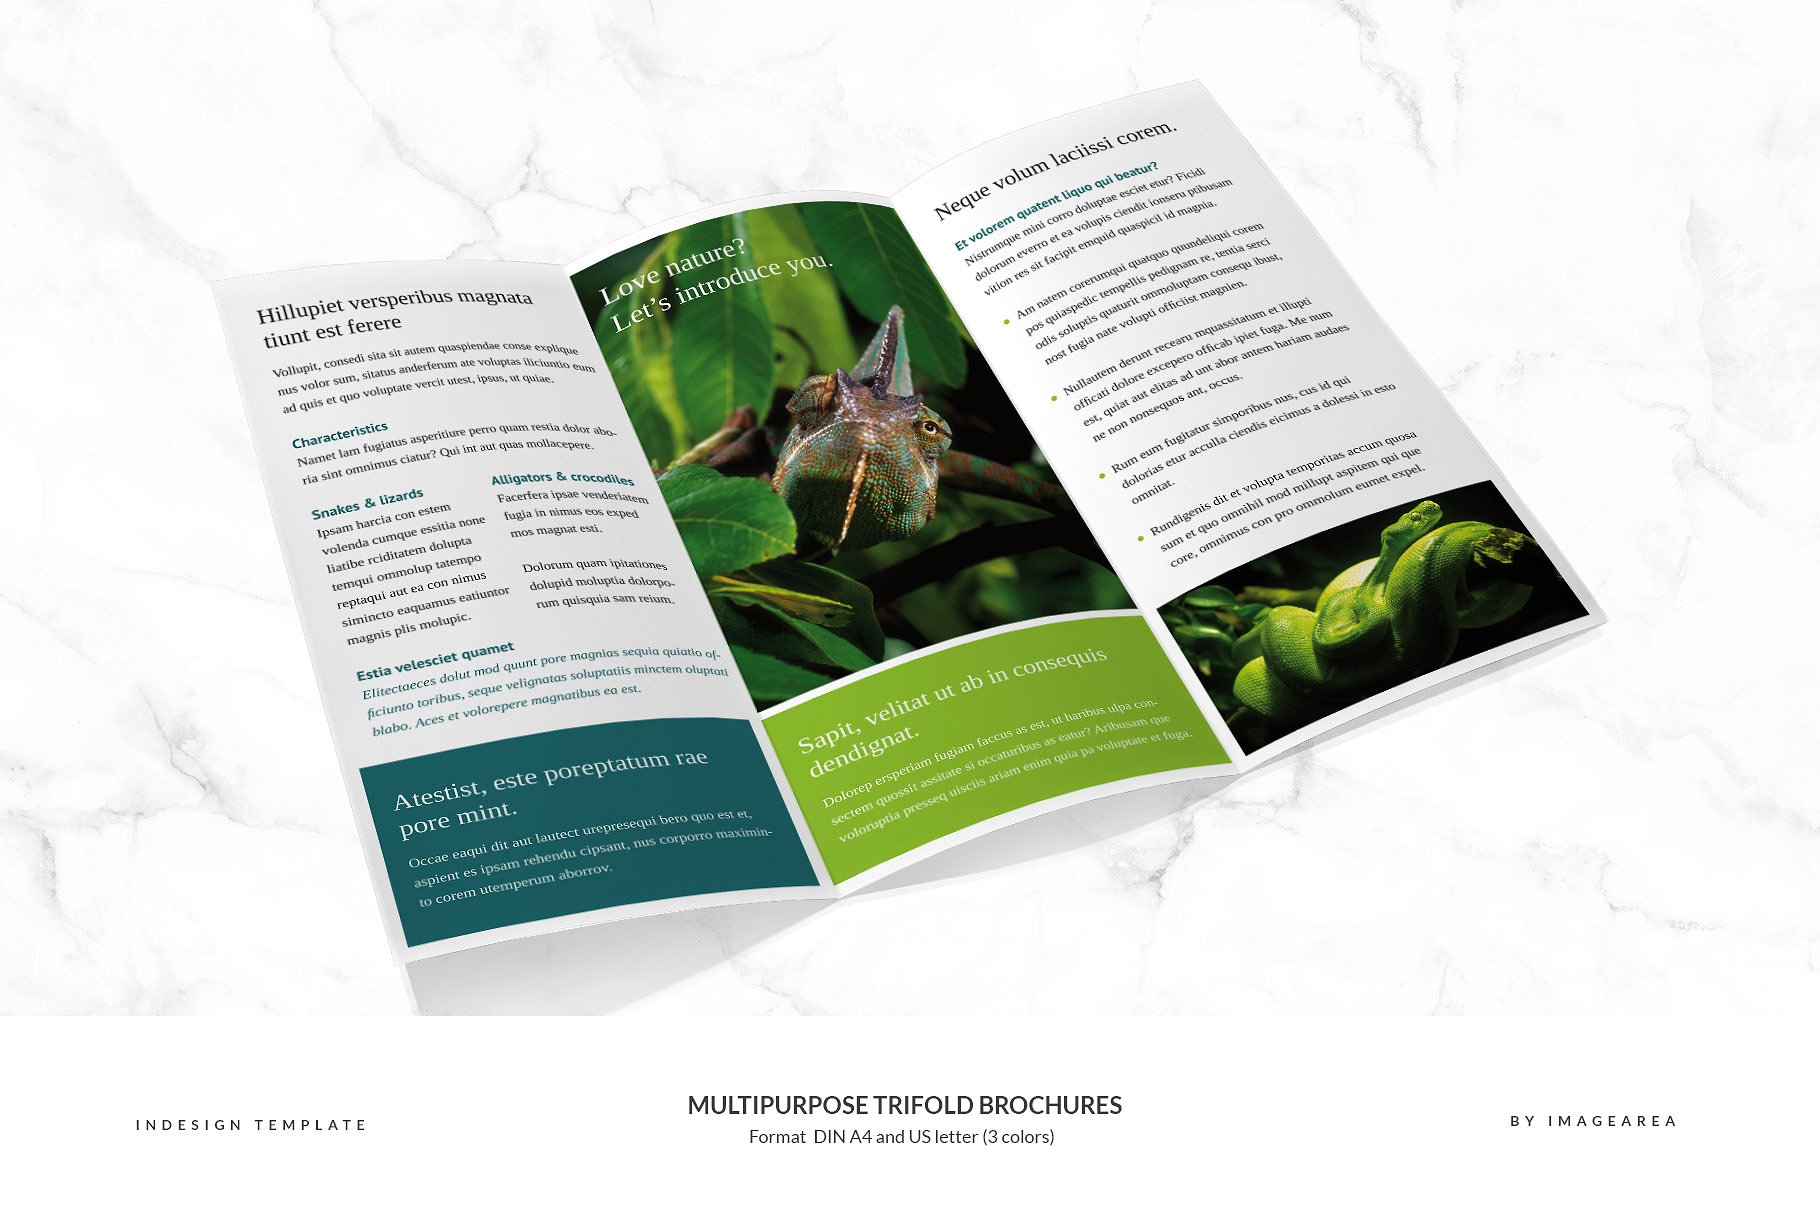 企业商业多用途折页小册子模板 Multipurpose Trifold Brochures插图(2)